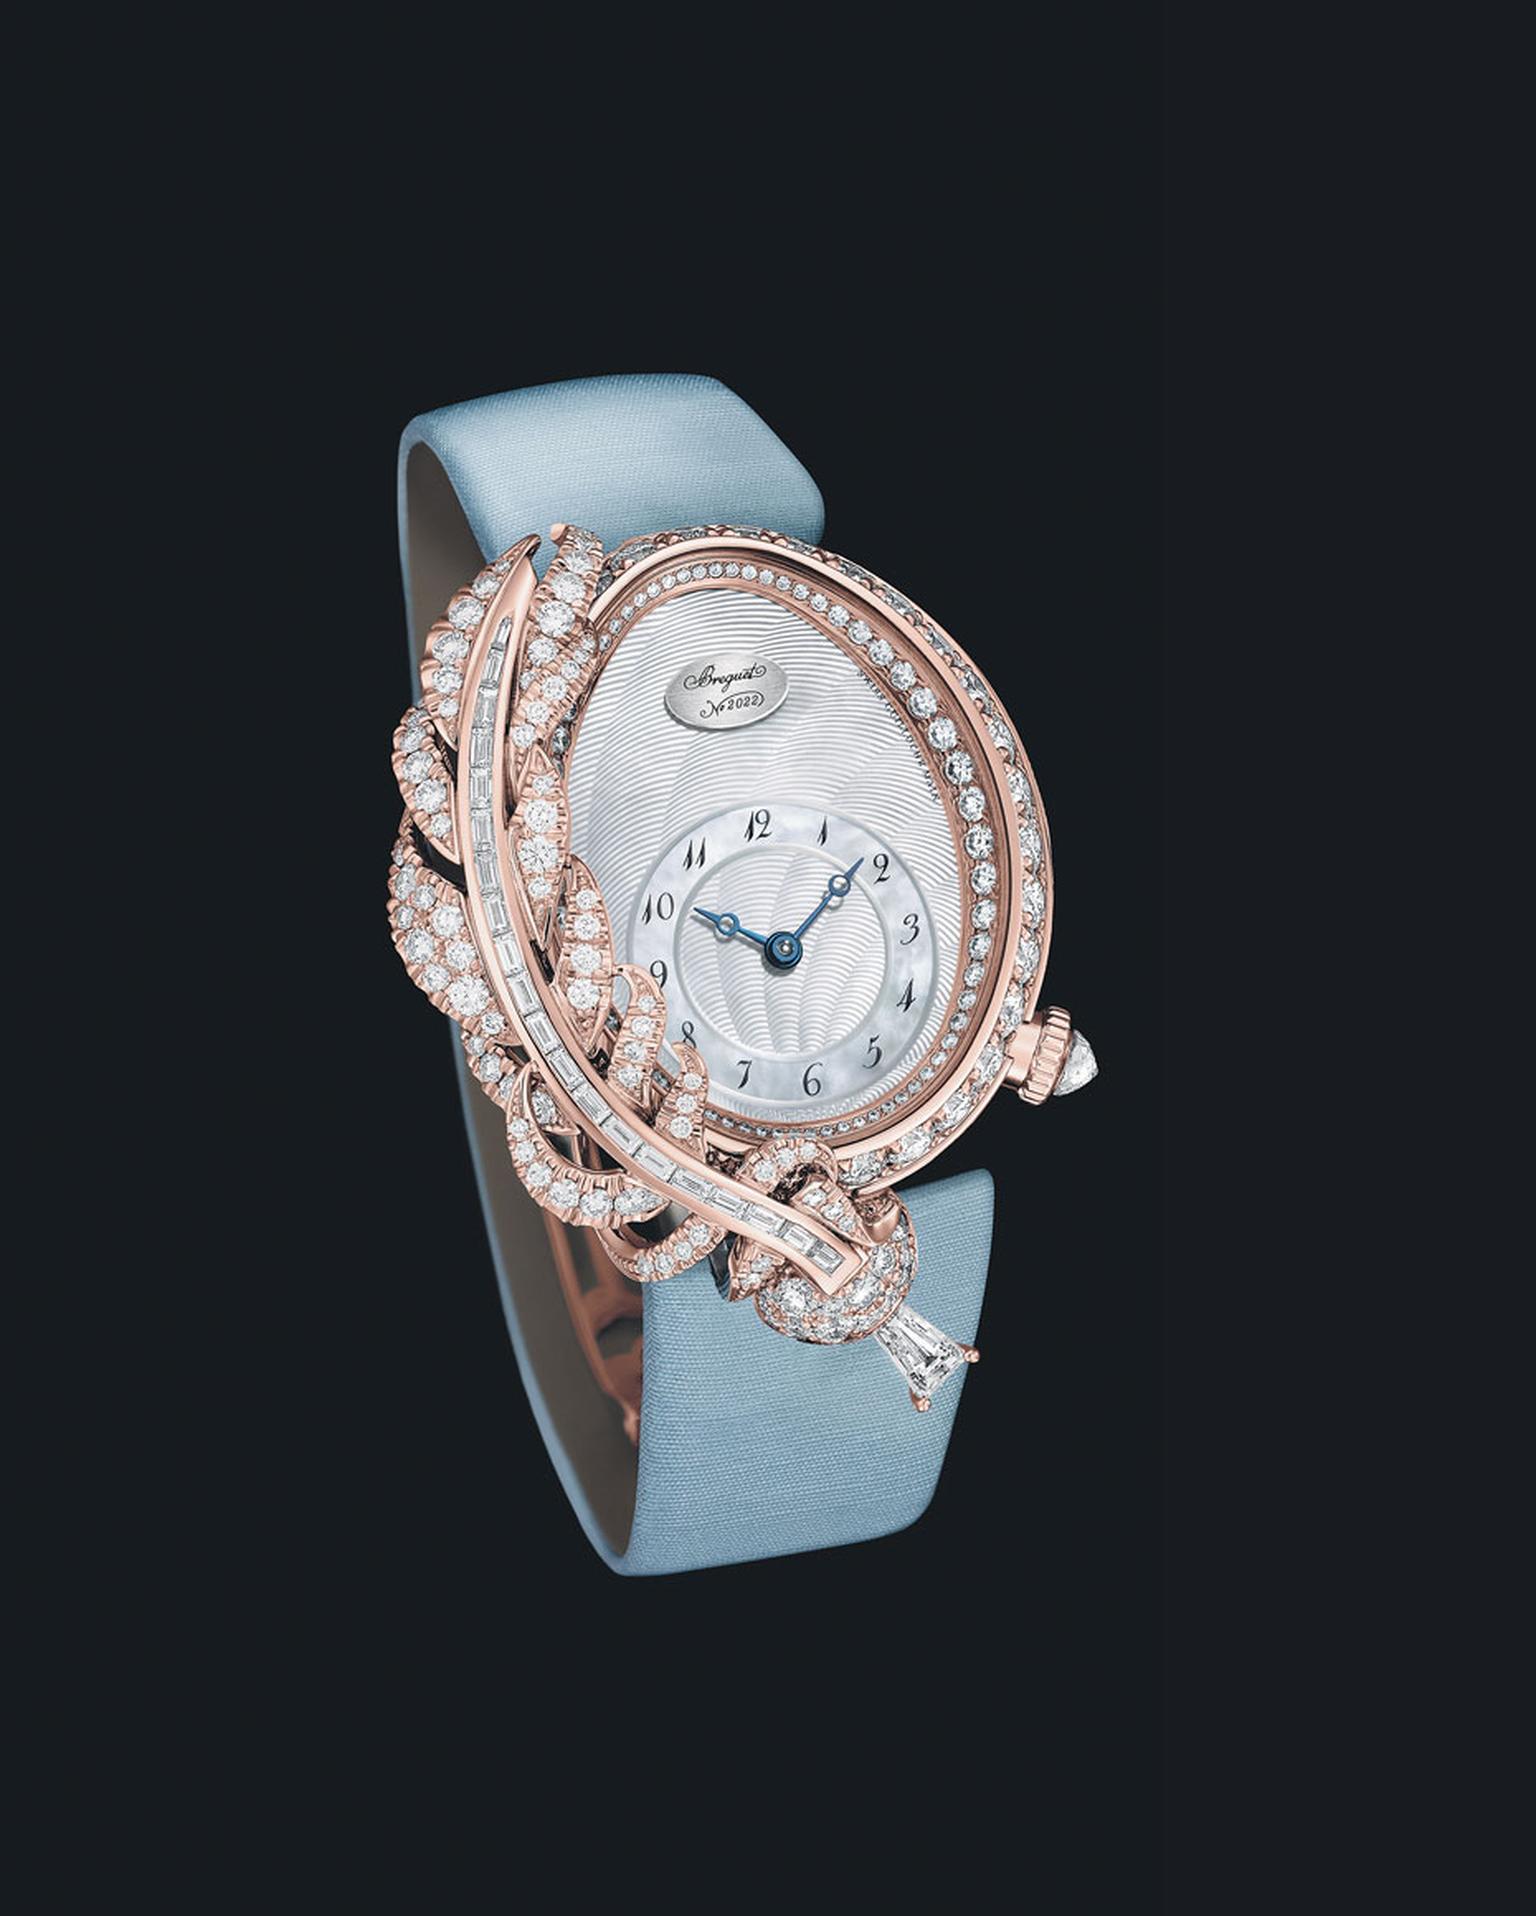 Baselworld-2015-high-jewellery-watches_Breguet_Rêve-de-Plume.jpg